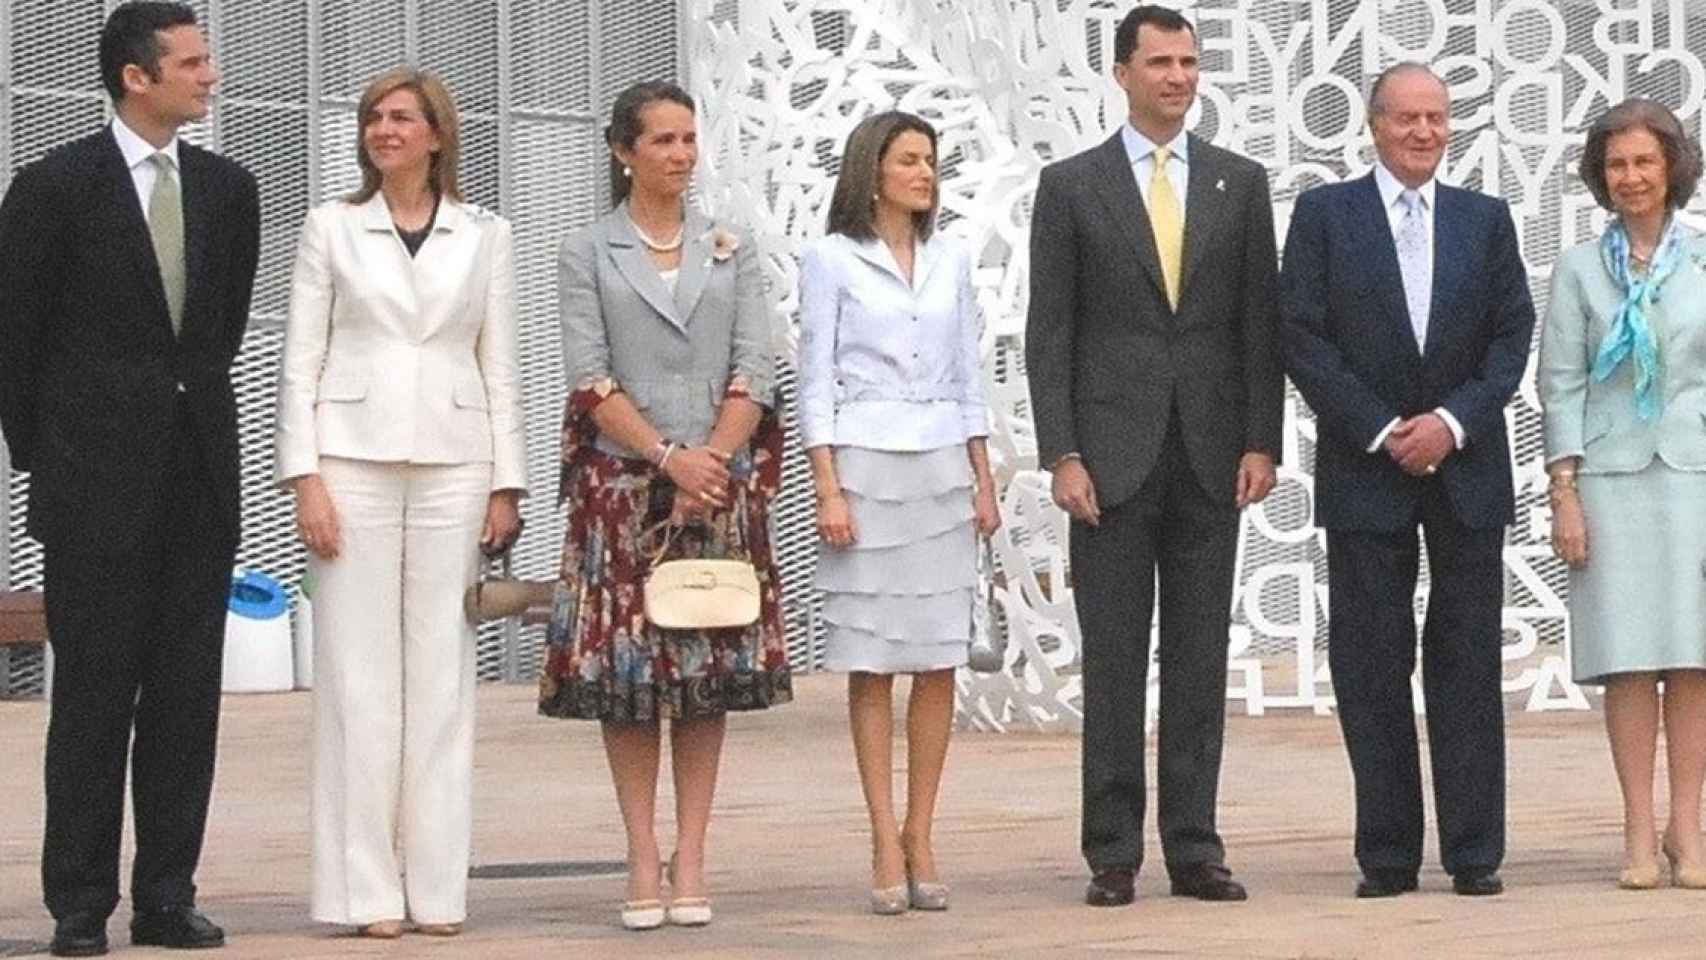 La familia real en 2008 / EUROPA PRESS